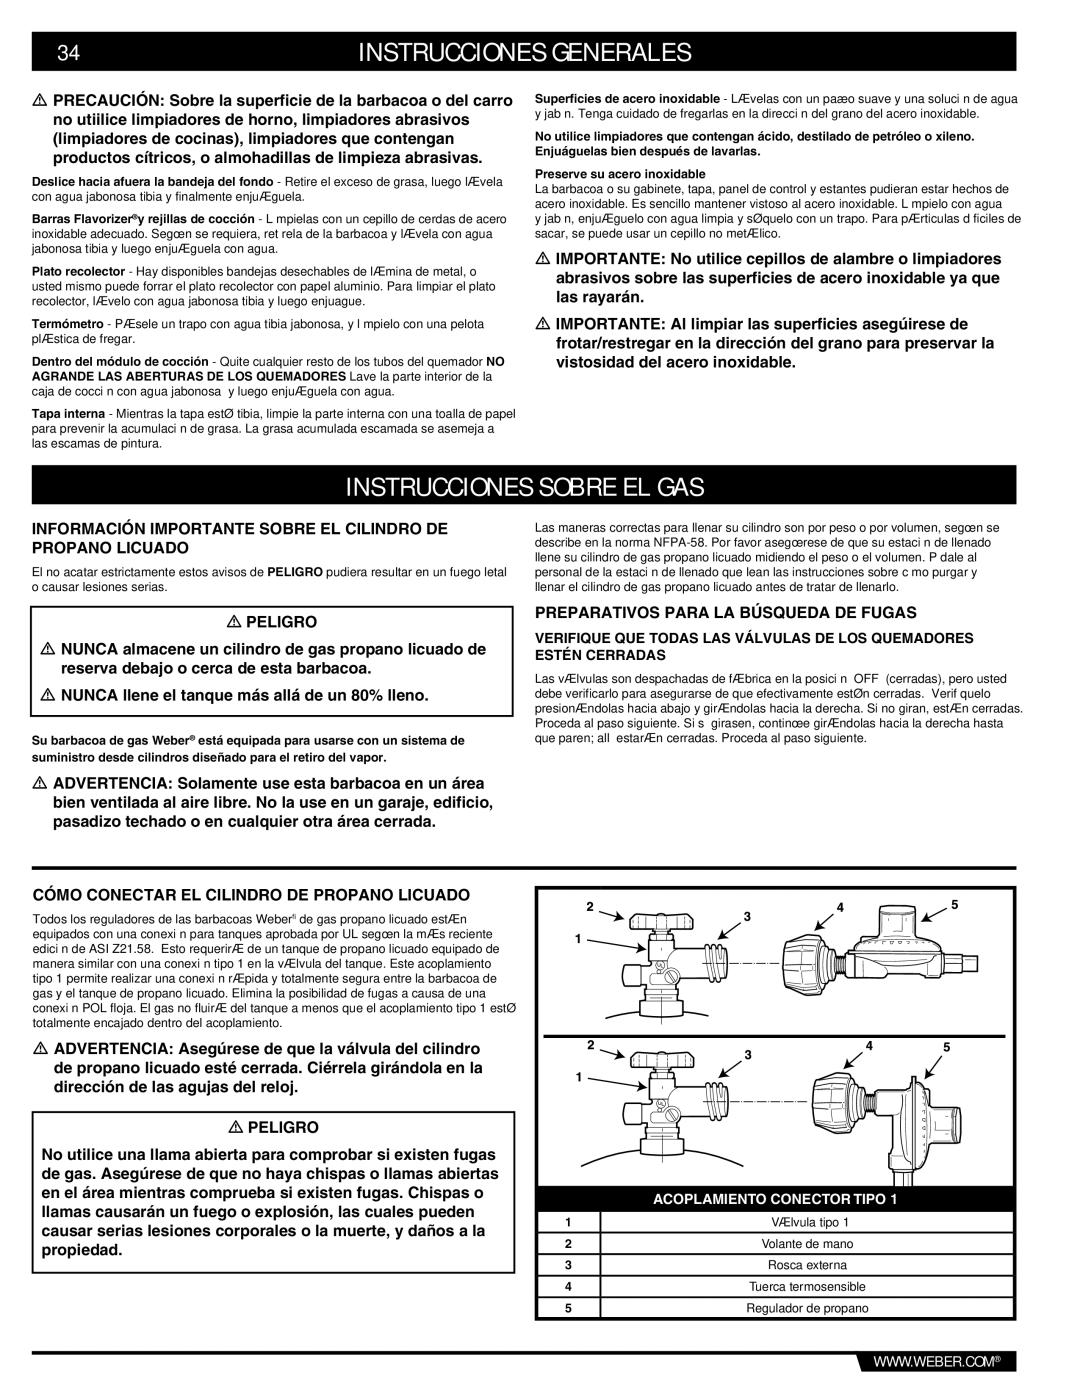 Summit E/S-620/650 manual Instrucciones Sobre EL GAS, Información Importante Sobre EL Cilindro DE Propano Licuado 